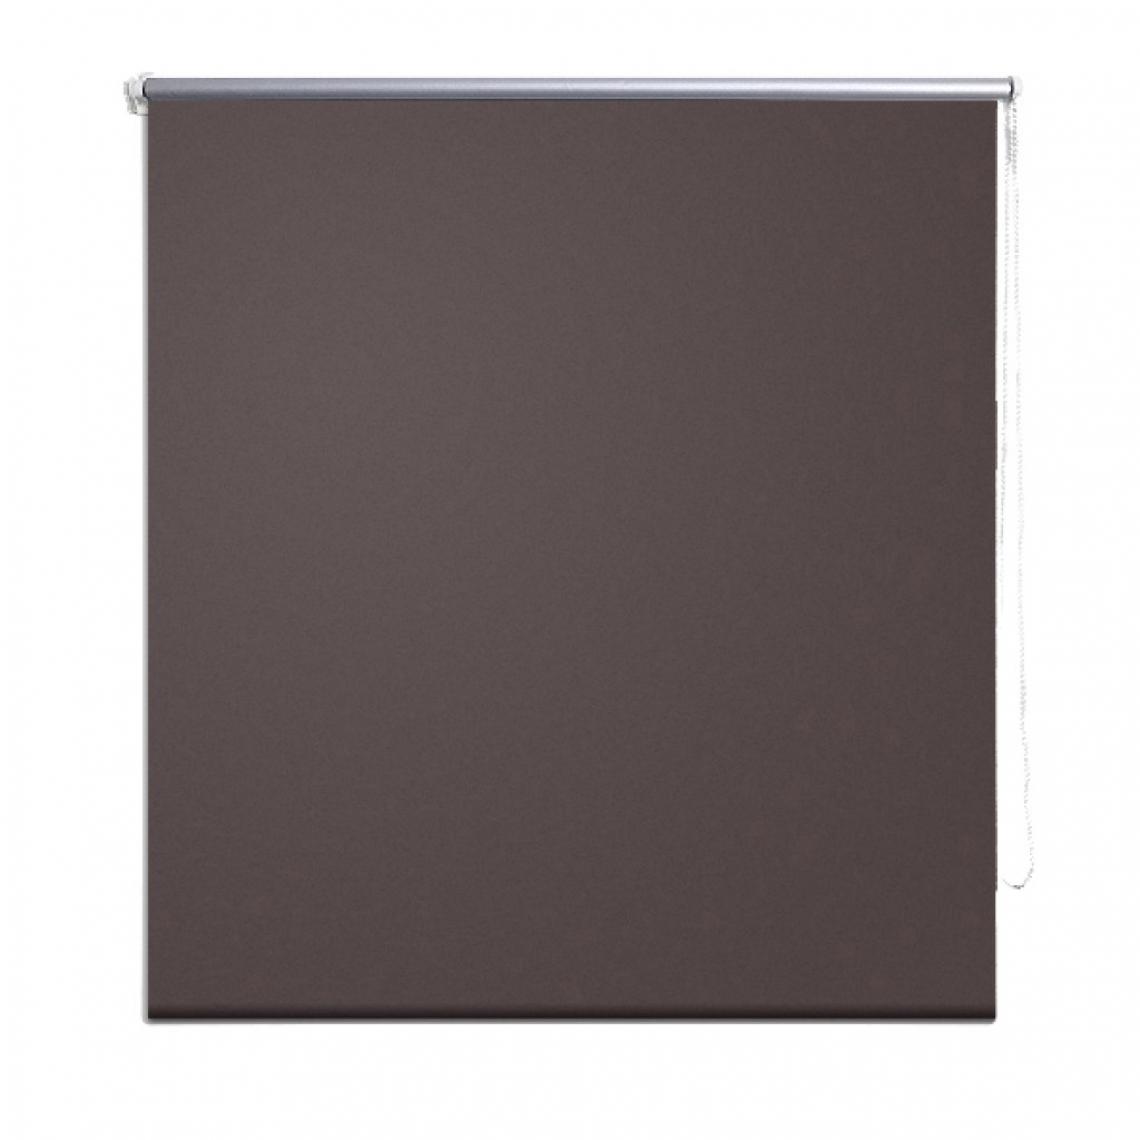 Helloshop26 - Store enrouleur marron occultant 100 x 230 cm fenêtre rideau pare-vue volet roulant 4102049 - Store compatible Velux